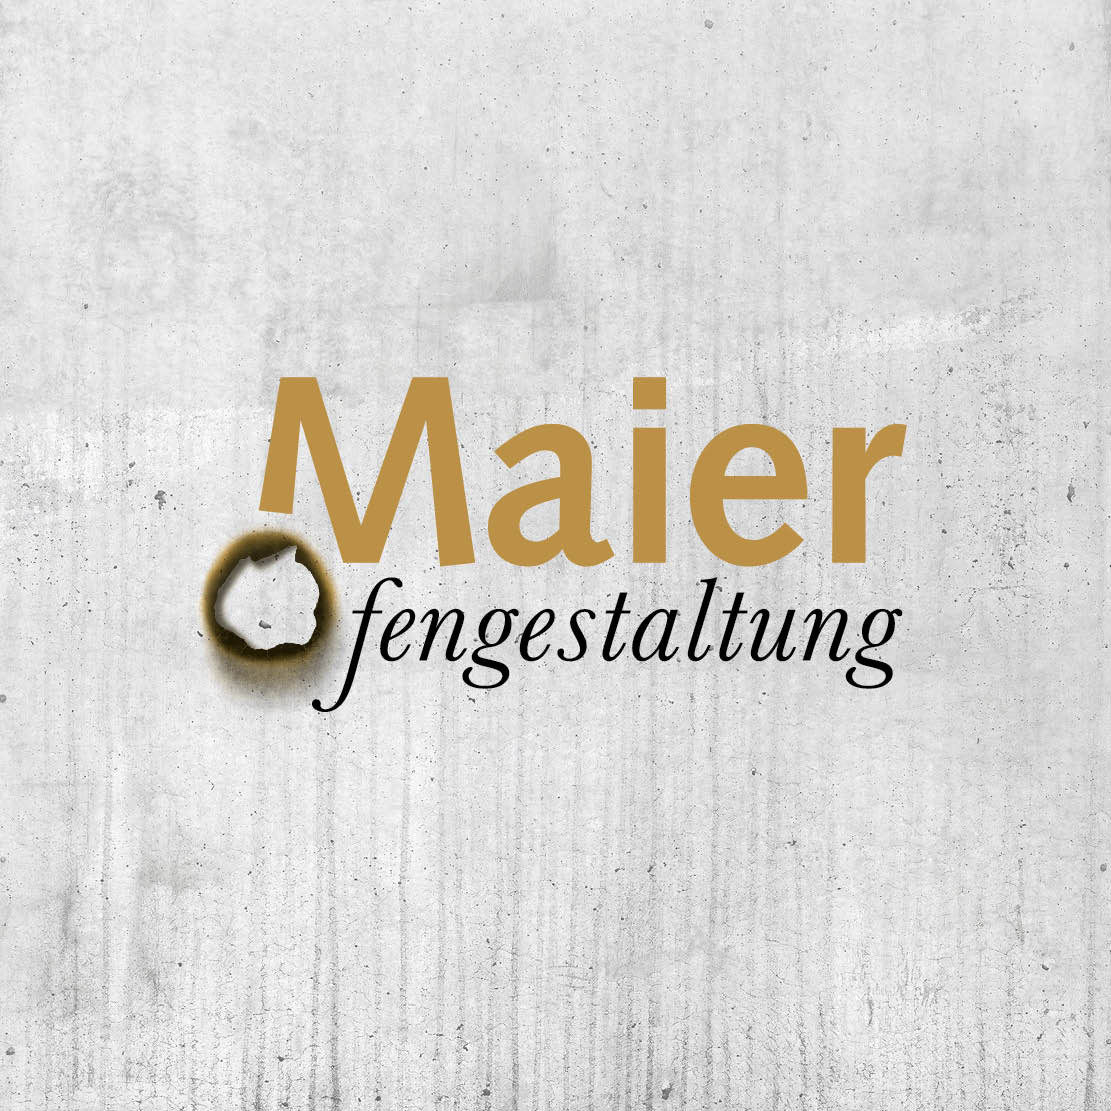 Maier Ofengestaltung Malterdingen